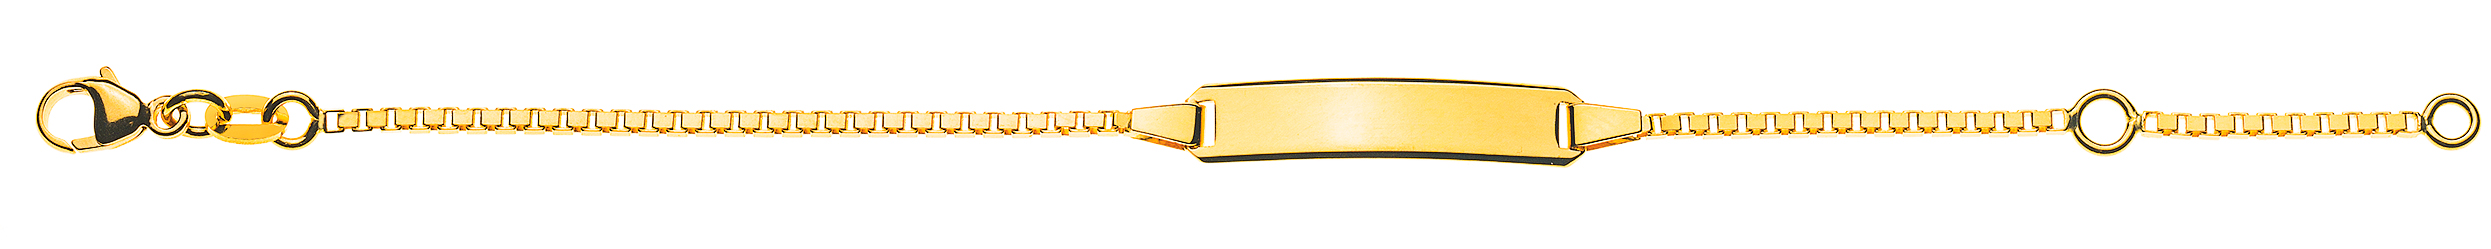 AURONOS Style ID-Bracelet en or jaune 9k chaîne vénitienne diamantée 16cm